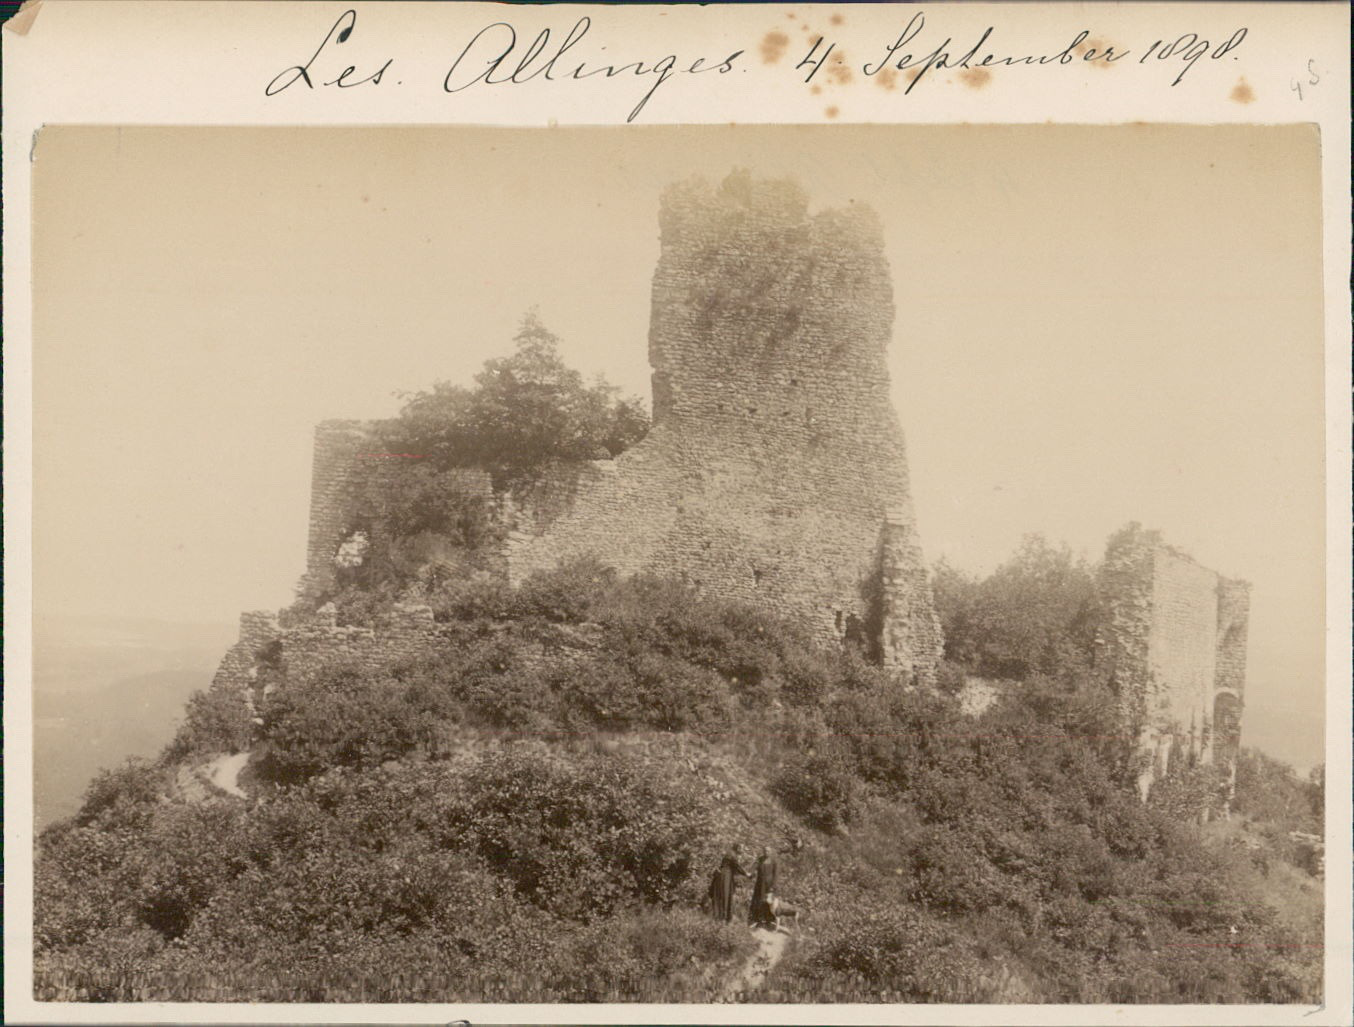 France, Thonon les Bains (Haute Savoie). Les Allinges. Ruins of Château Vintag